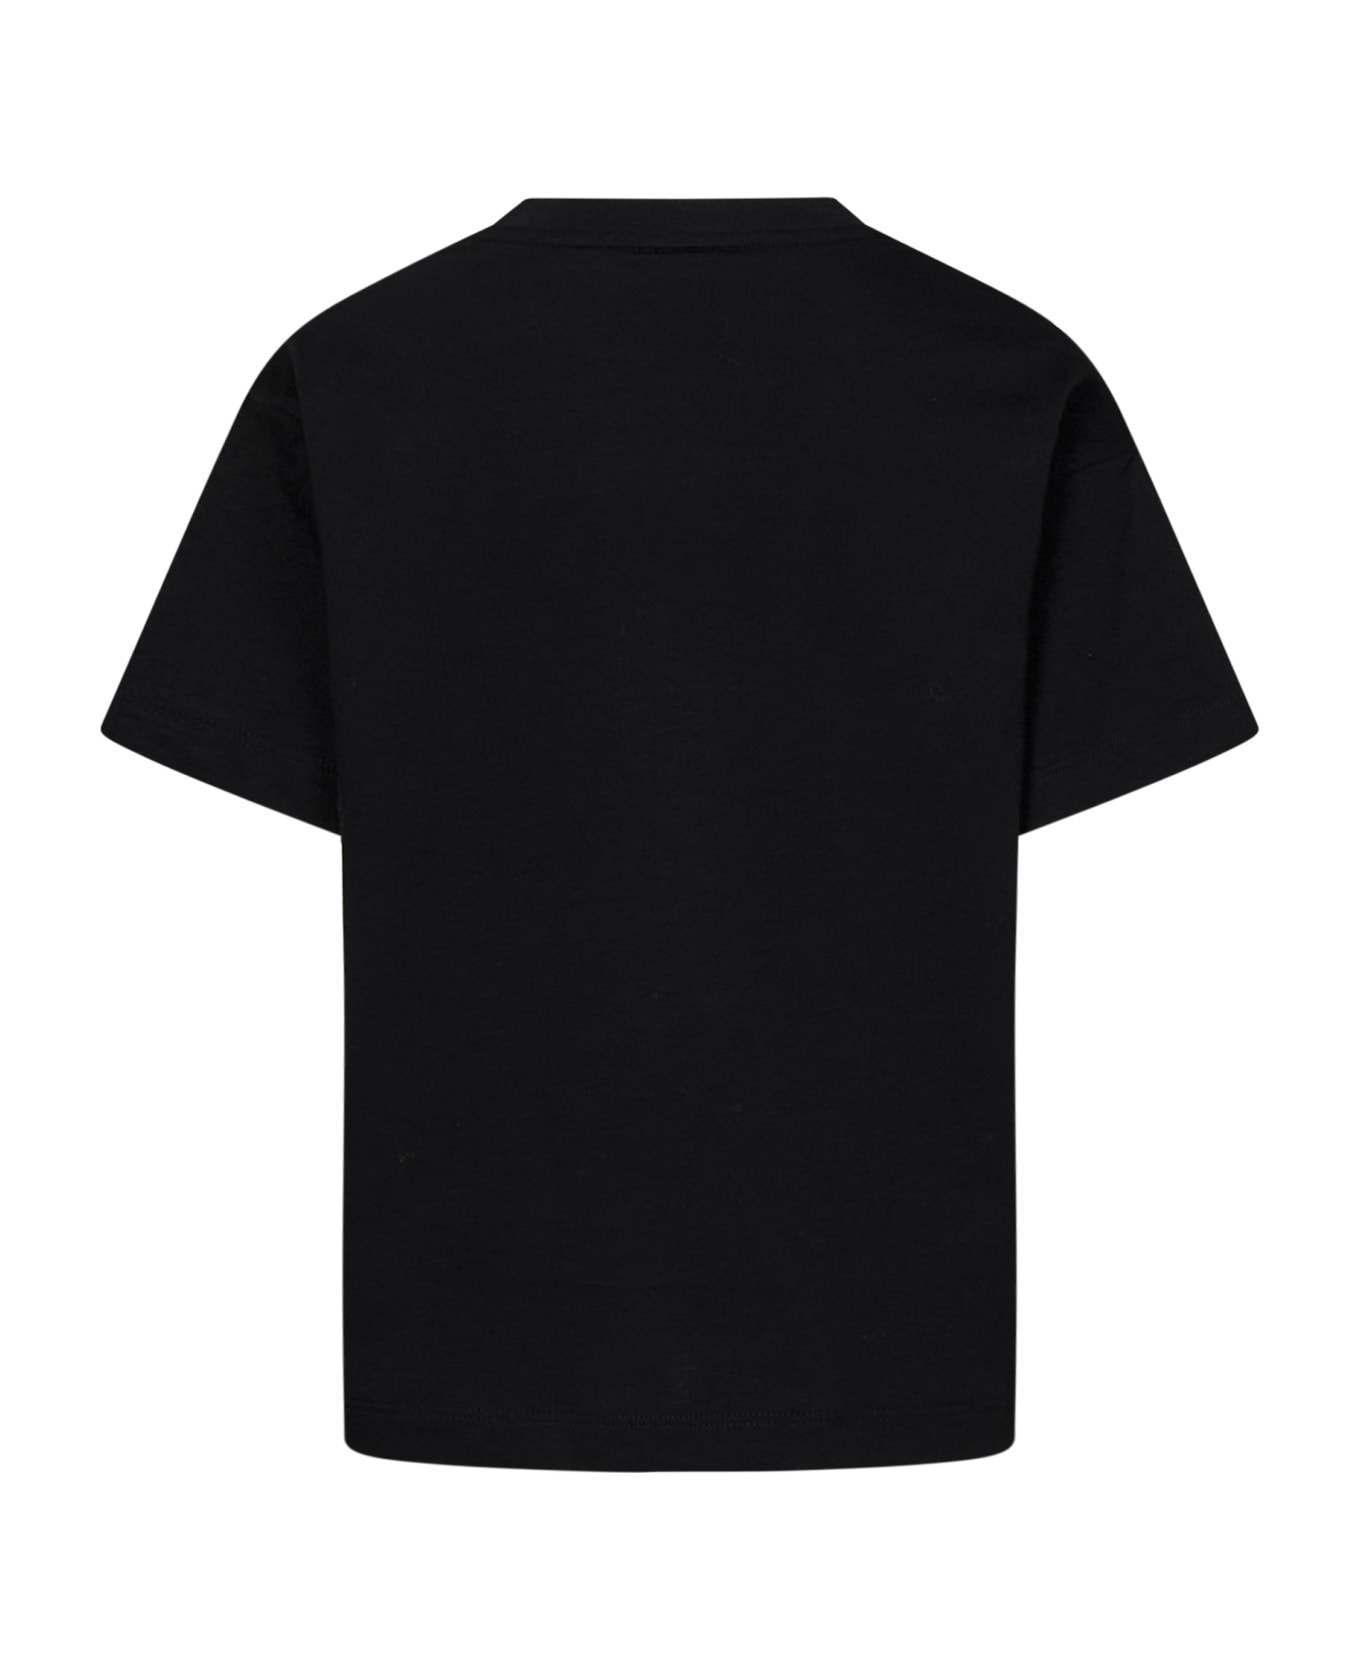 Fendi T-shirt - Black Tシャツ＆ポロシャツ